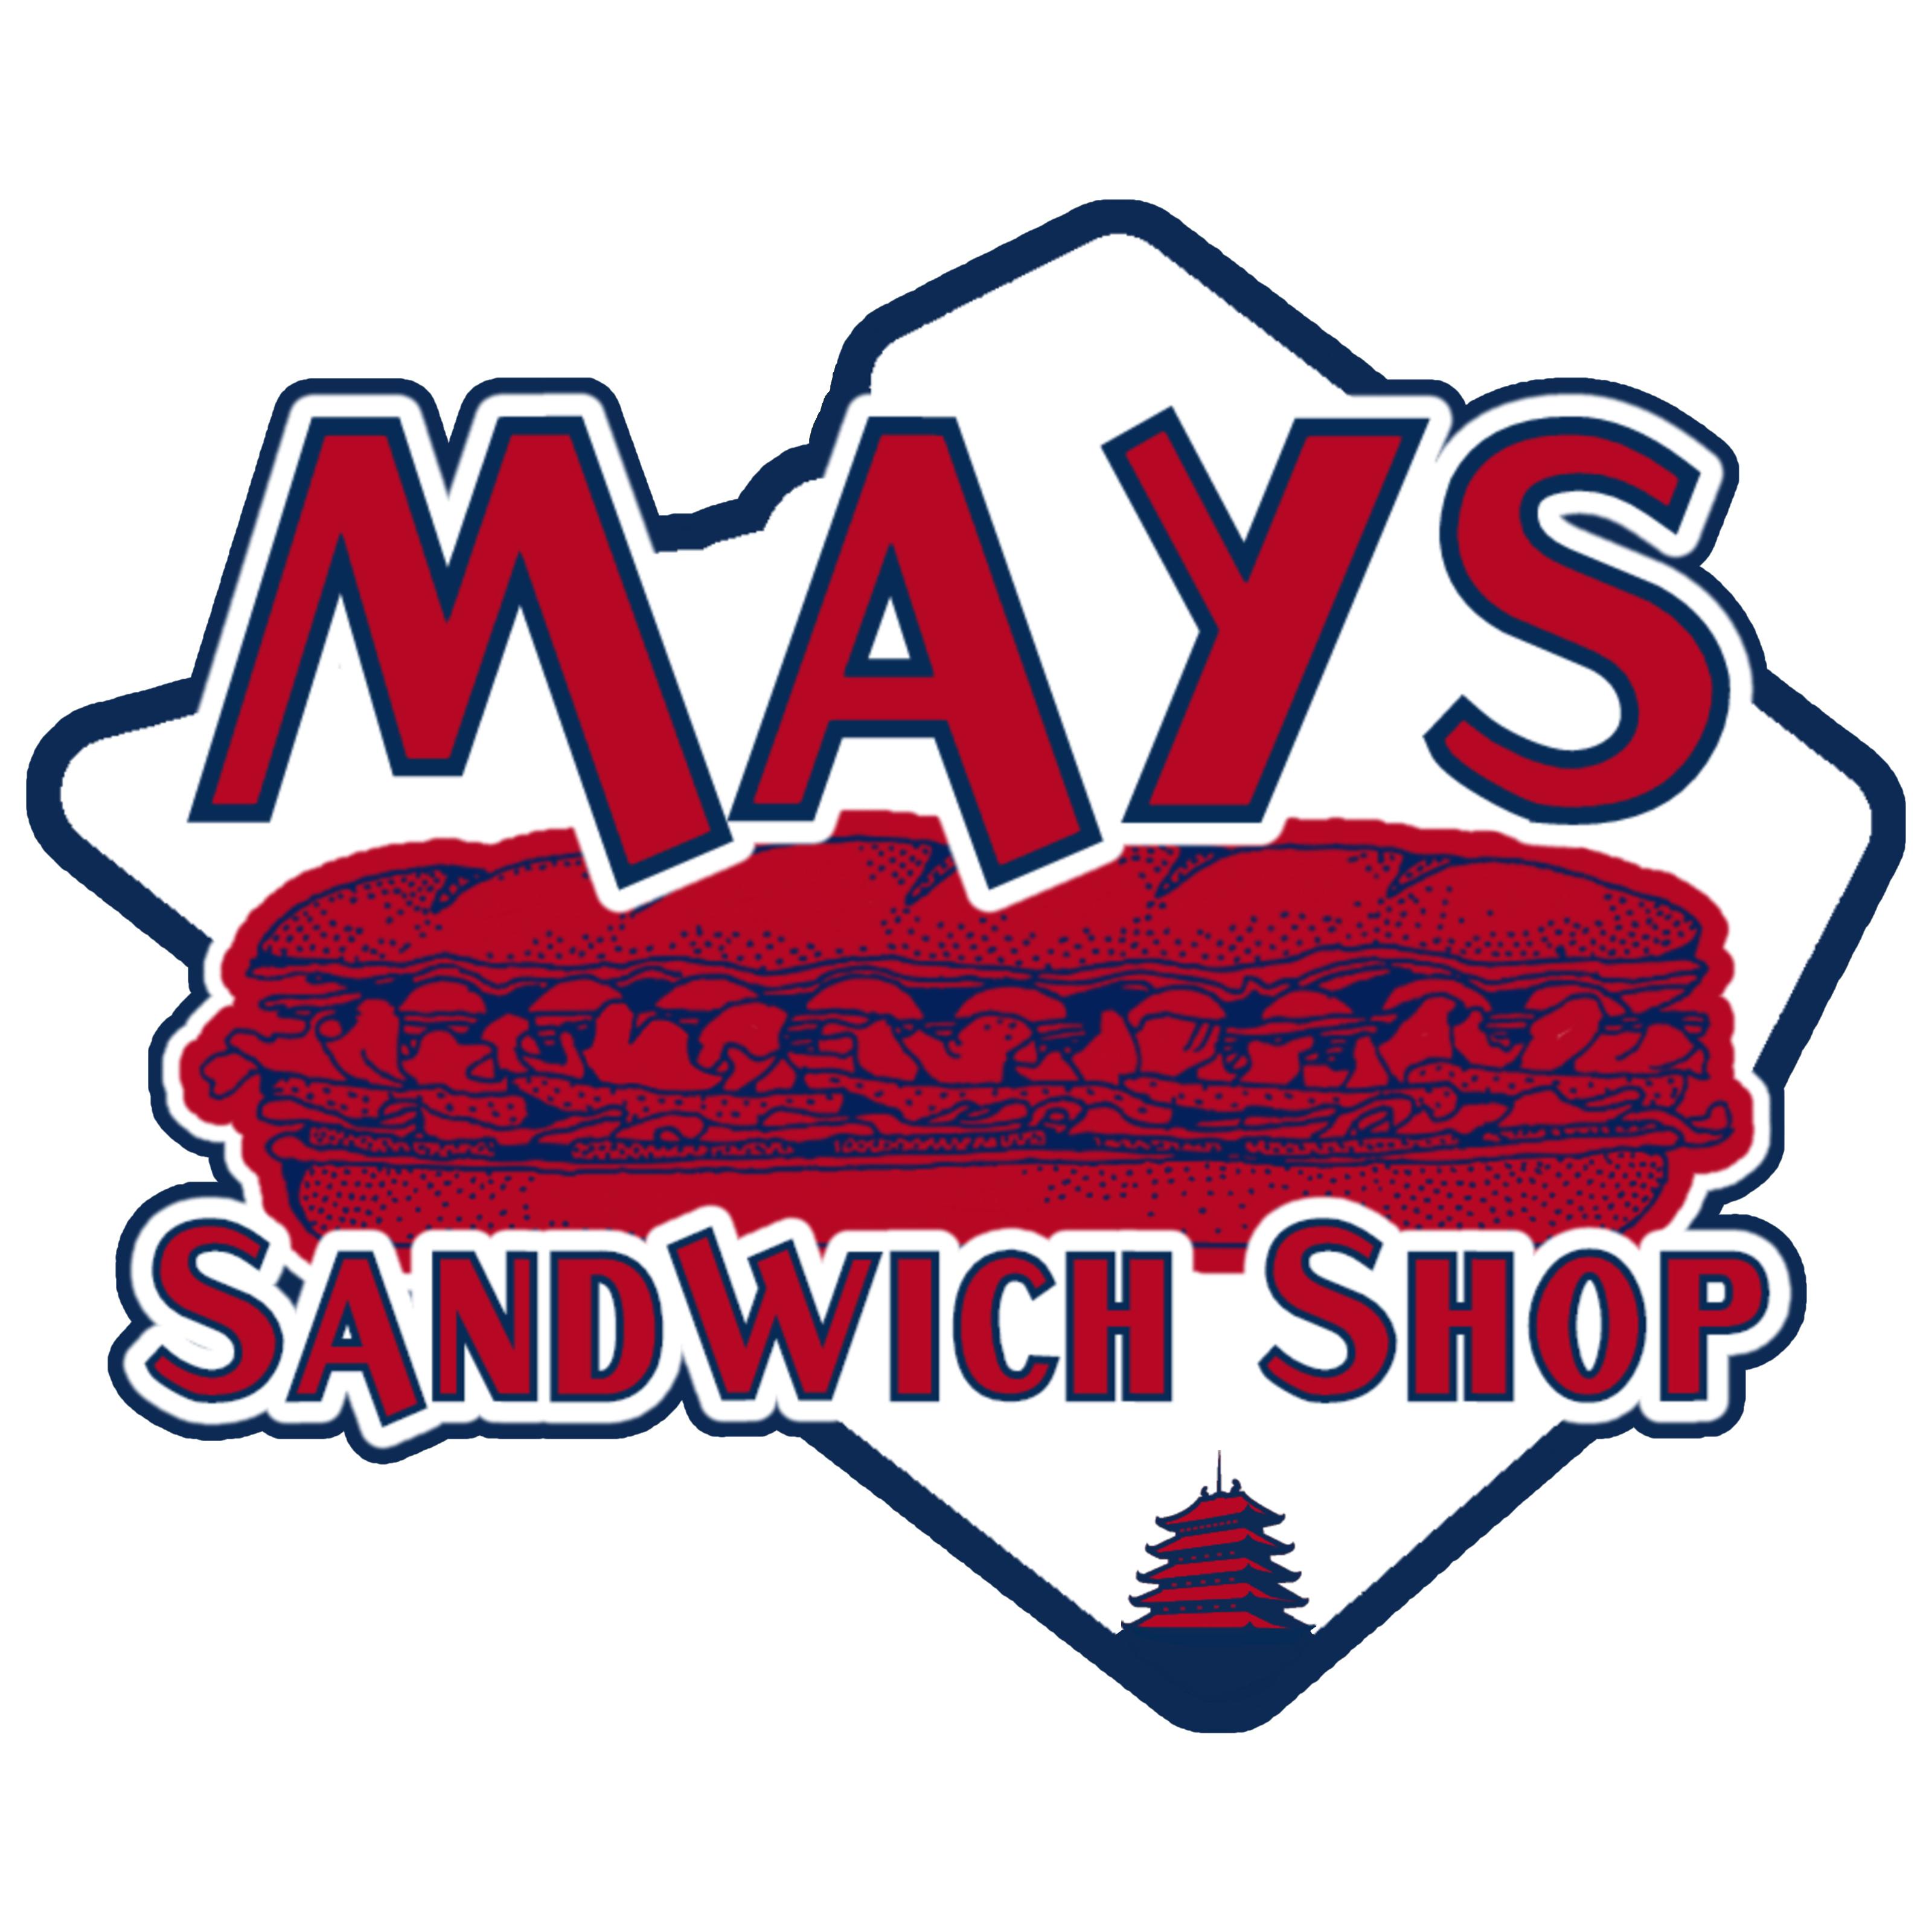 Mays Sandwich Shop